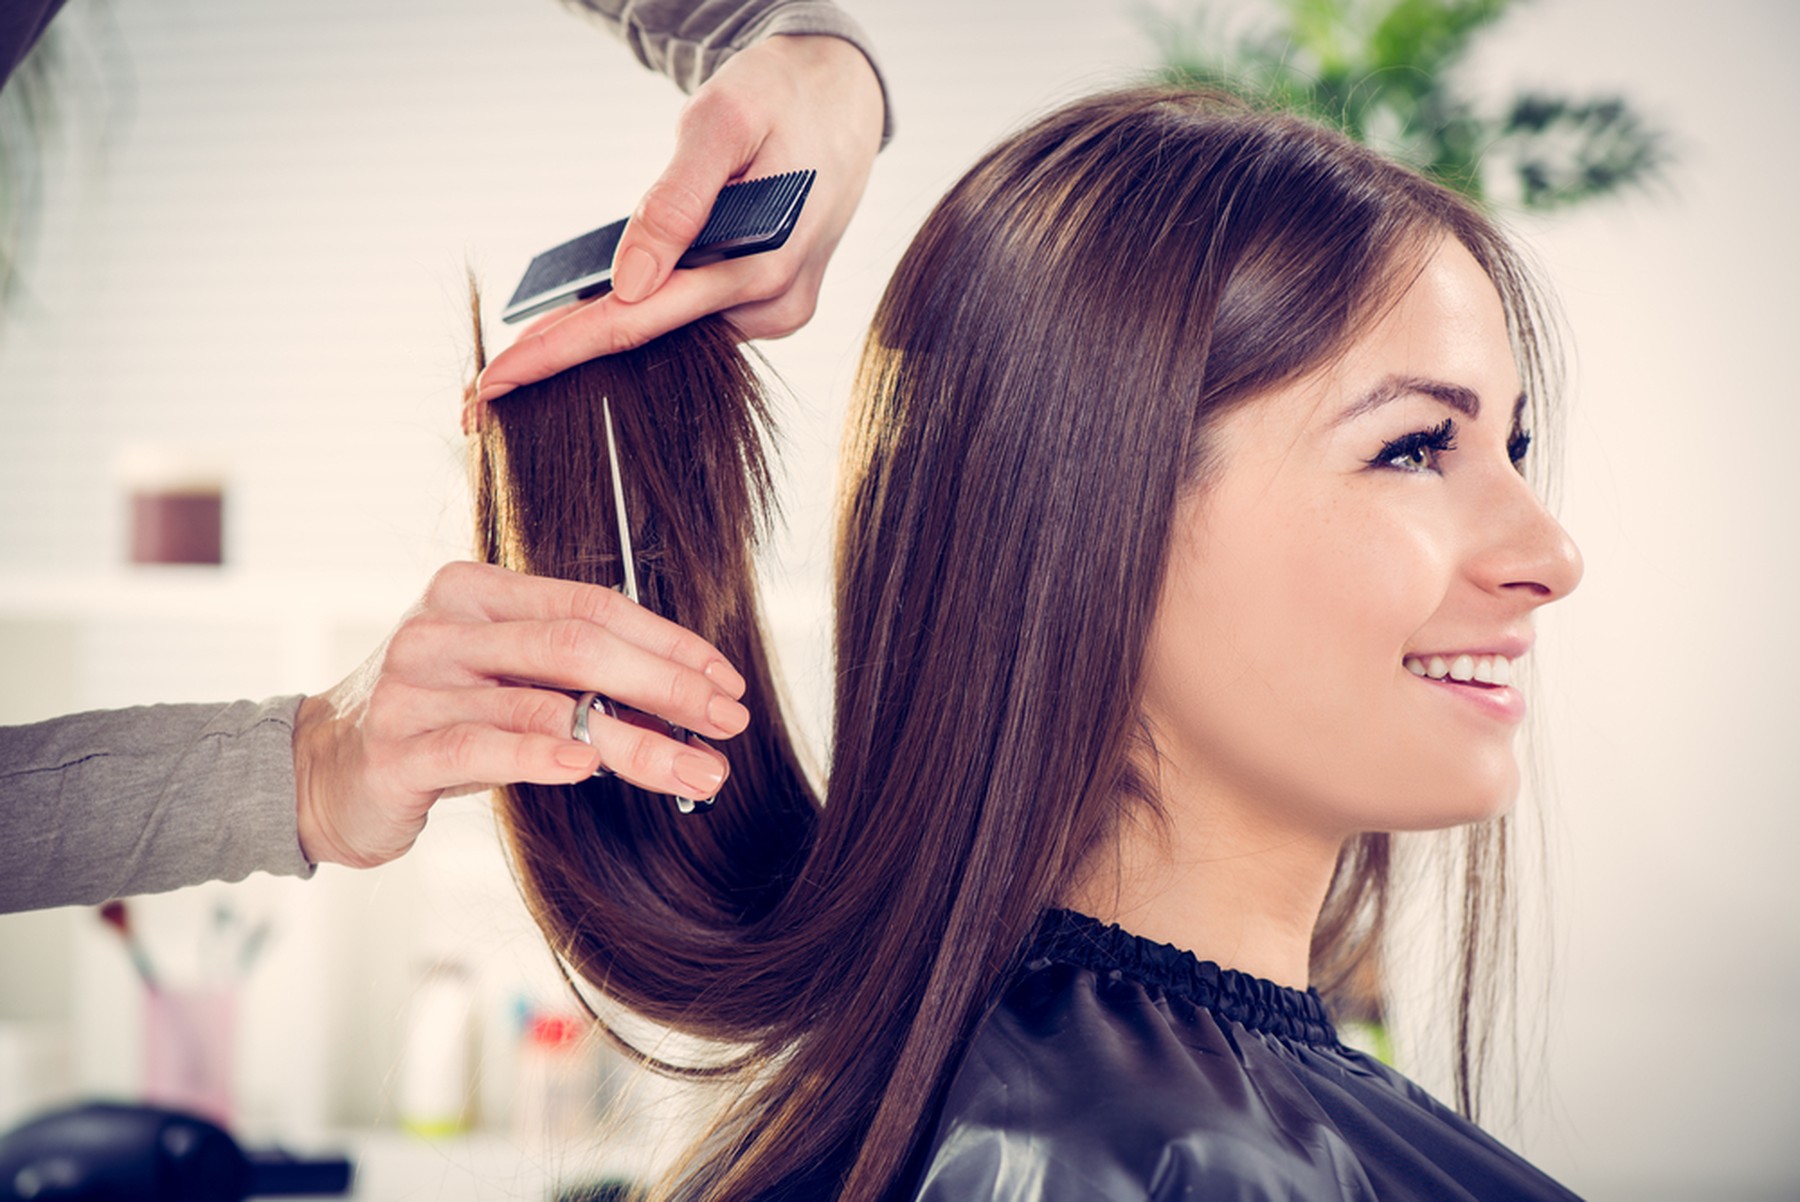 Mujer castaña sonriente mientras le cortan las puntas del pelo